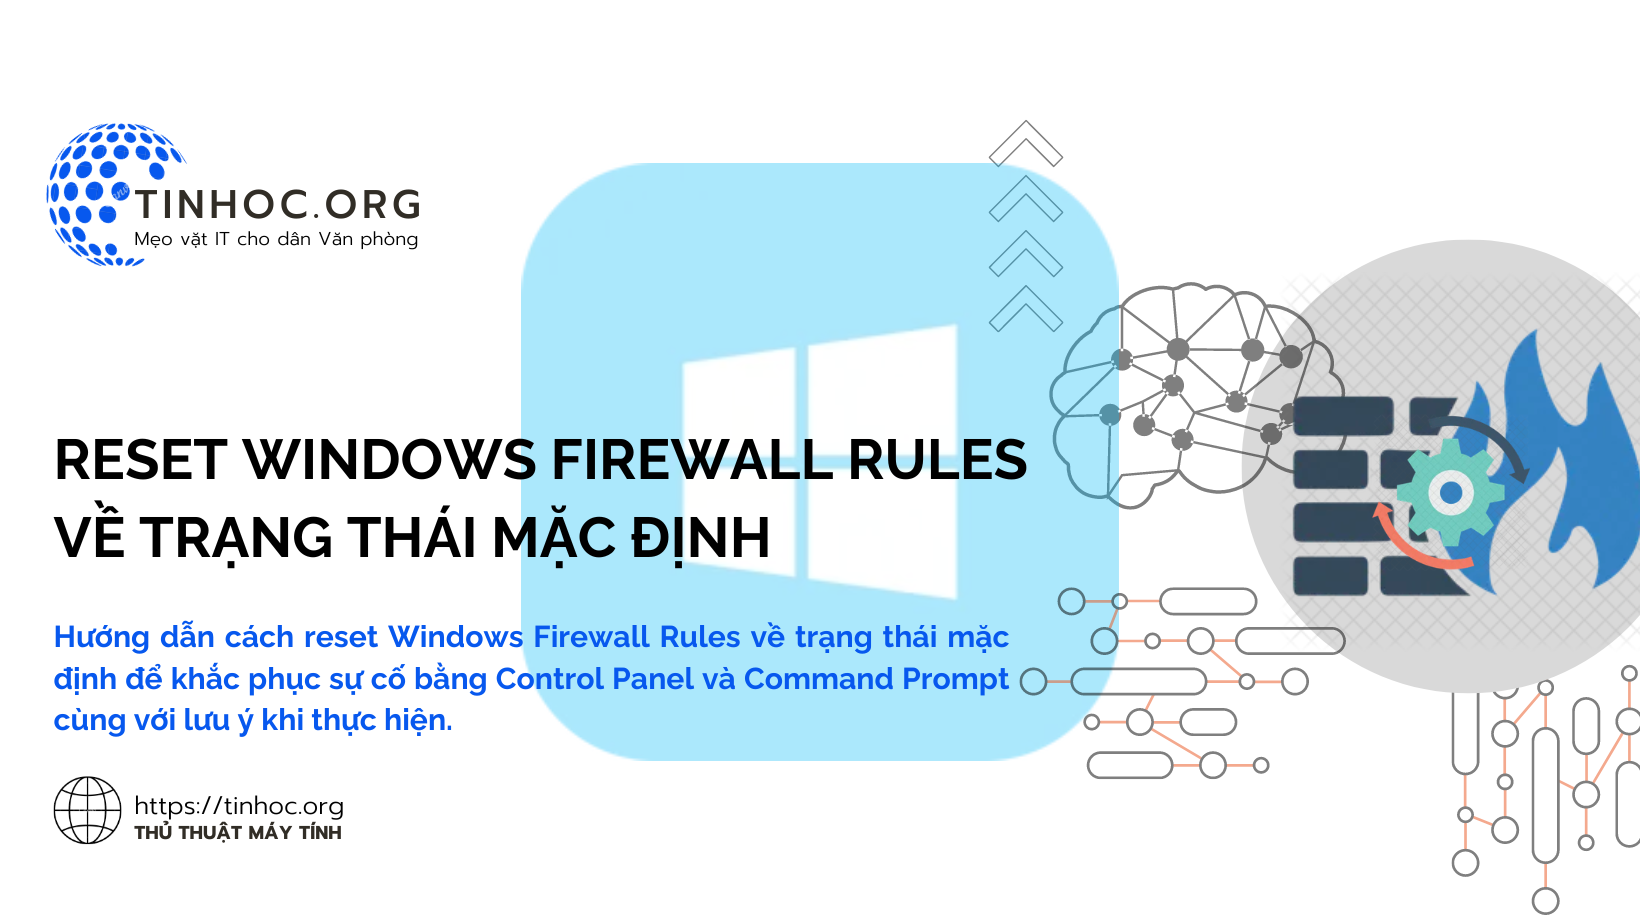 Hướng dẫn cách reset Windows Firewall Rules về trạng thái mặc định để khắc phục sự cố bằng Control Panel và Command Prompt cùng với lưu ý khi thực hiện.